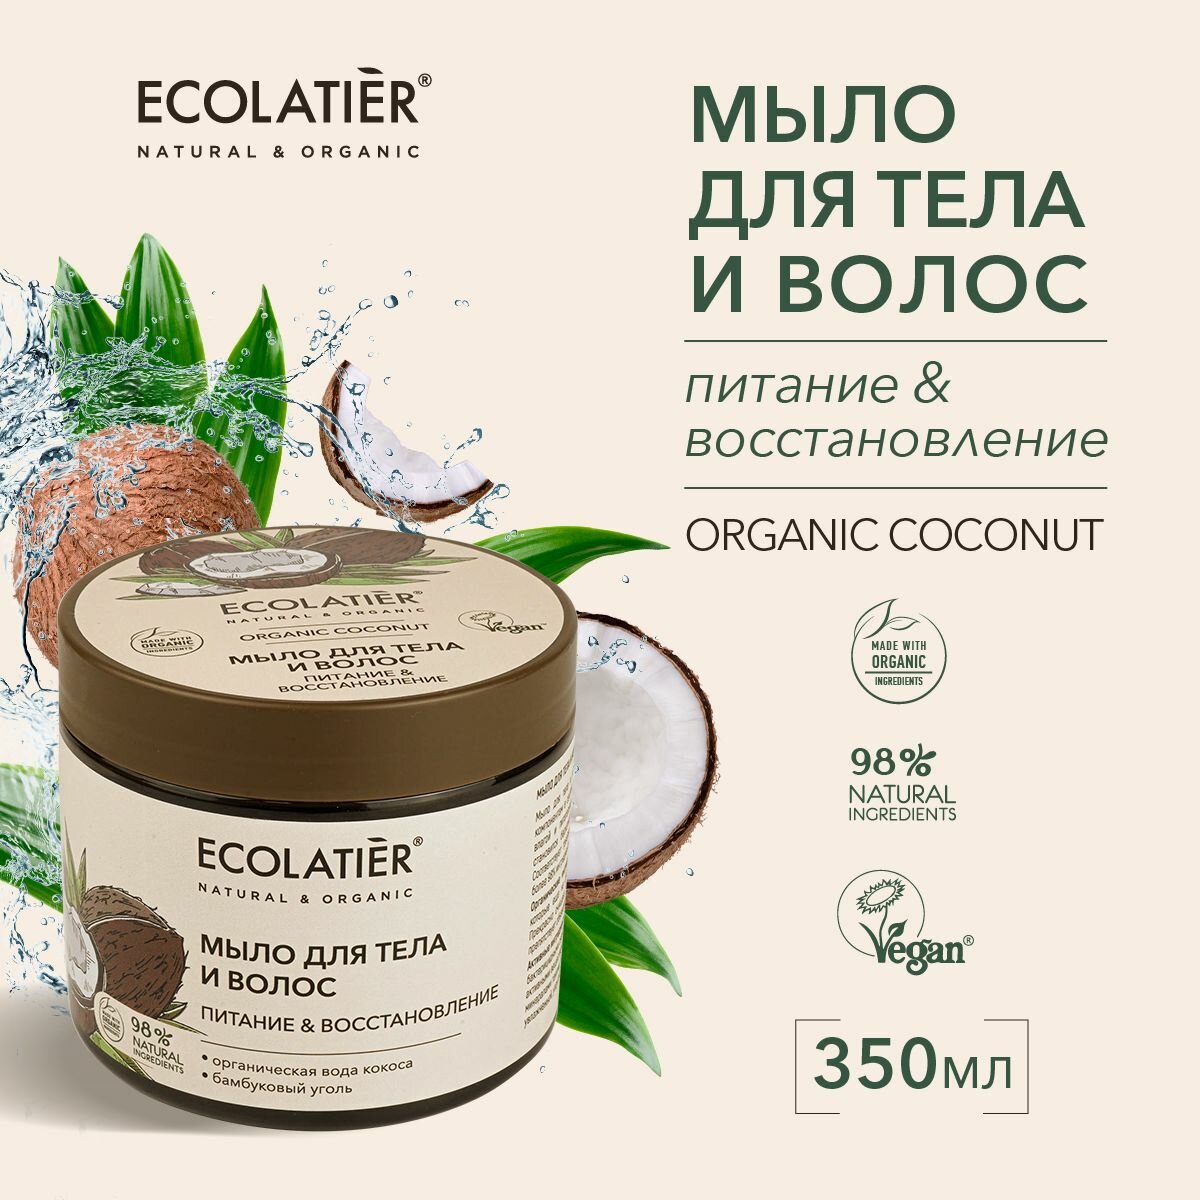 ECOLATIER / Мыло для тела и волос Питание & Восстановление Серия ORGANIC COCONUT, 350 мл